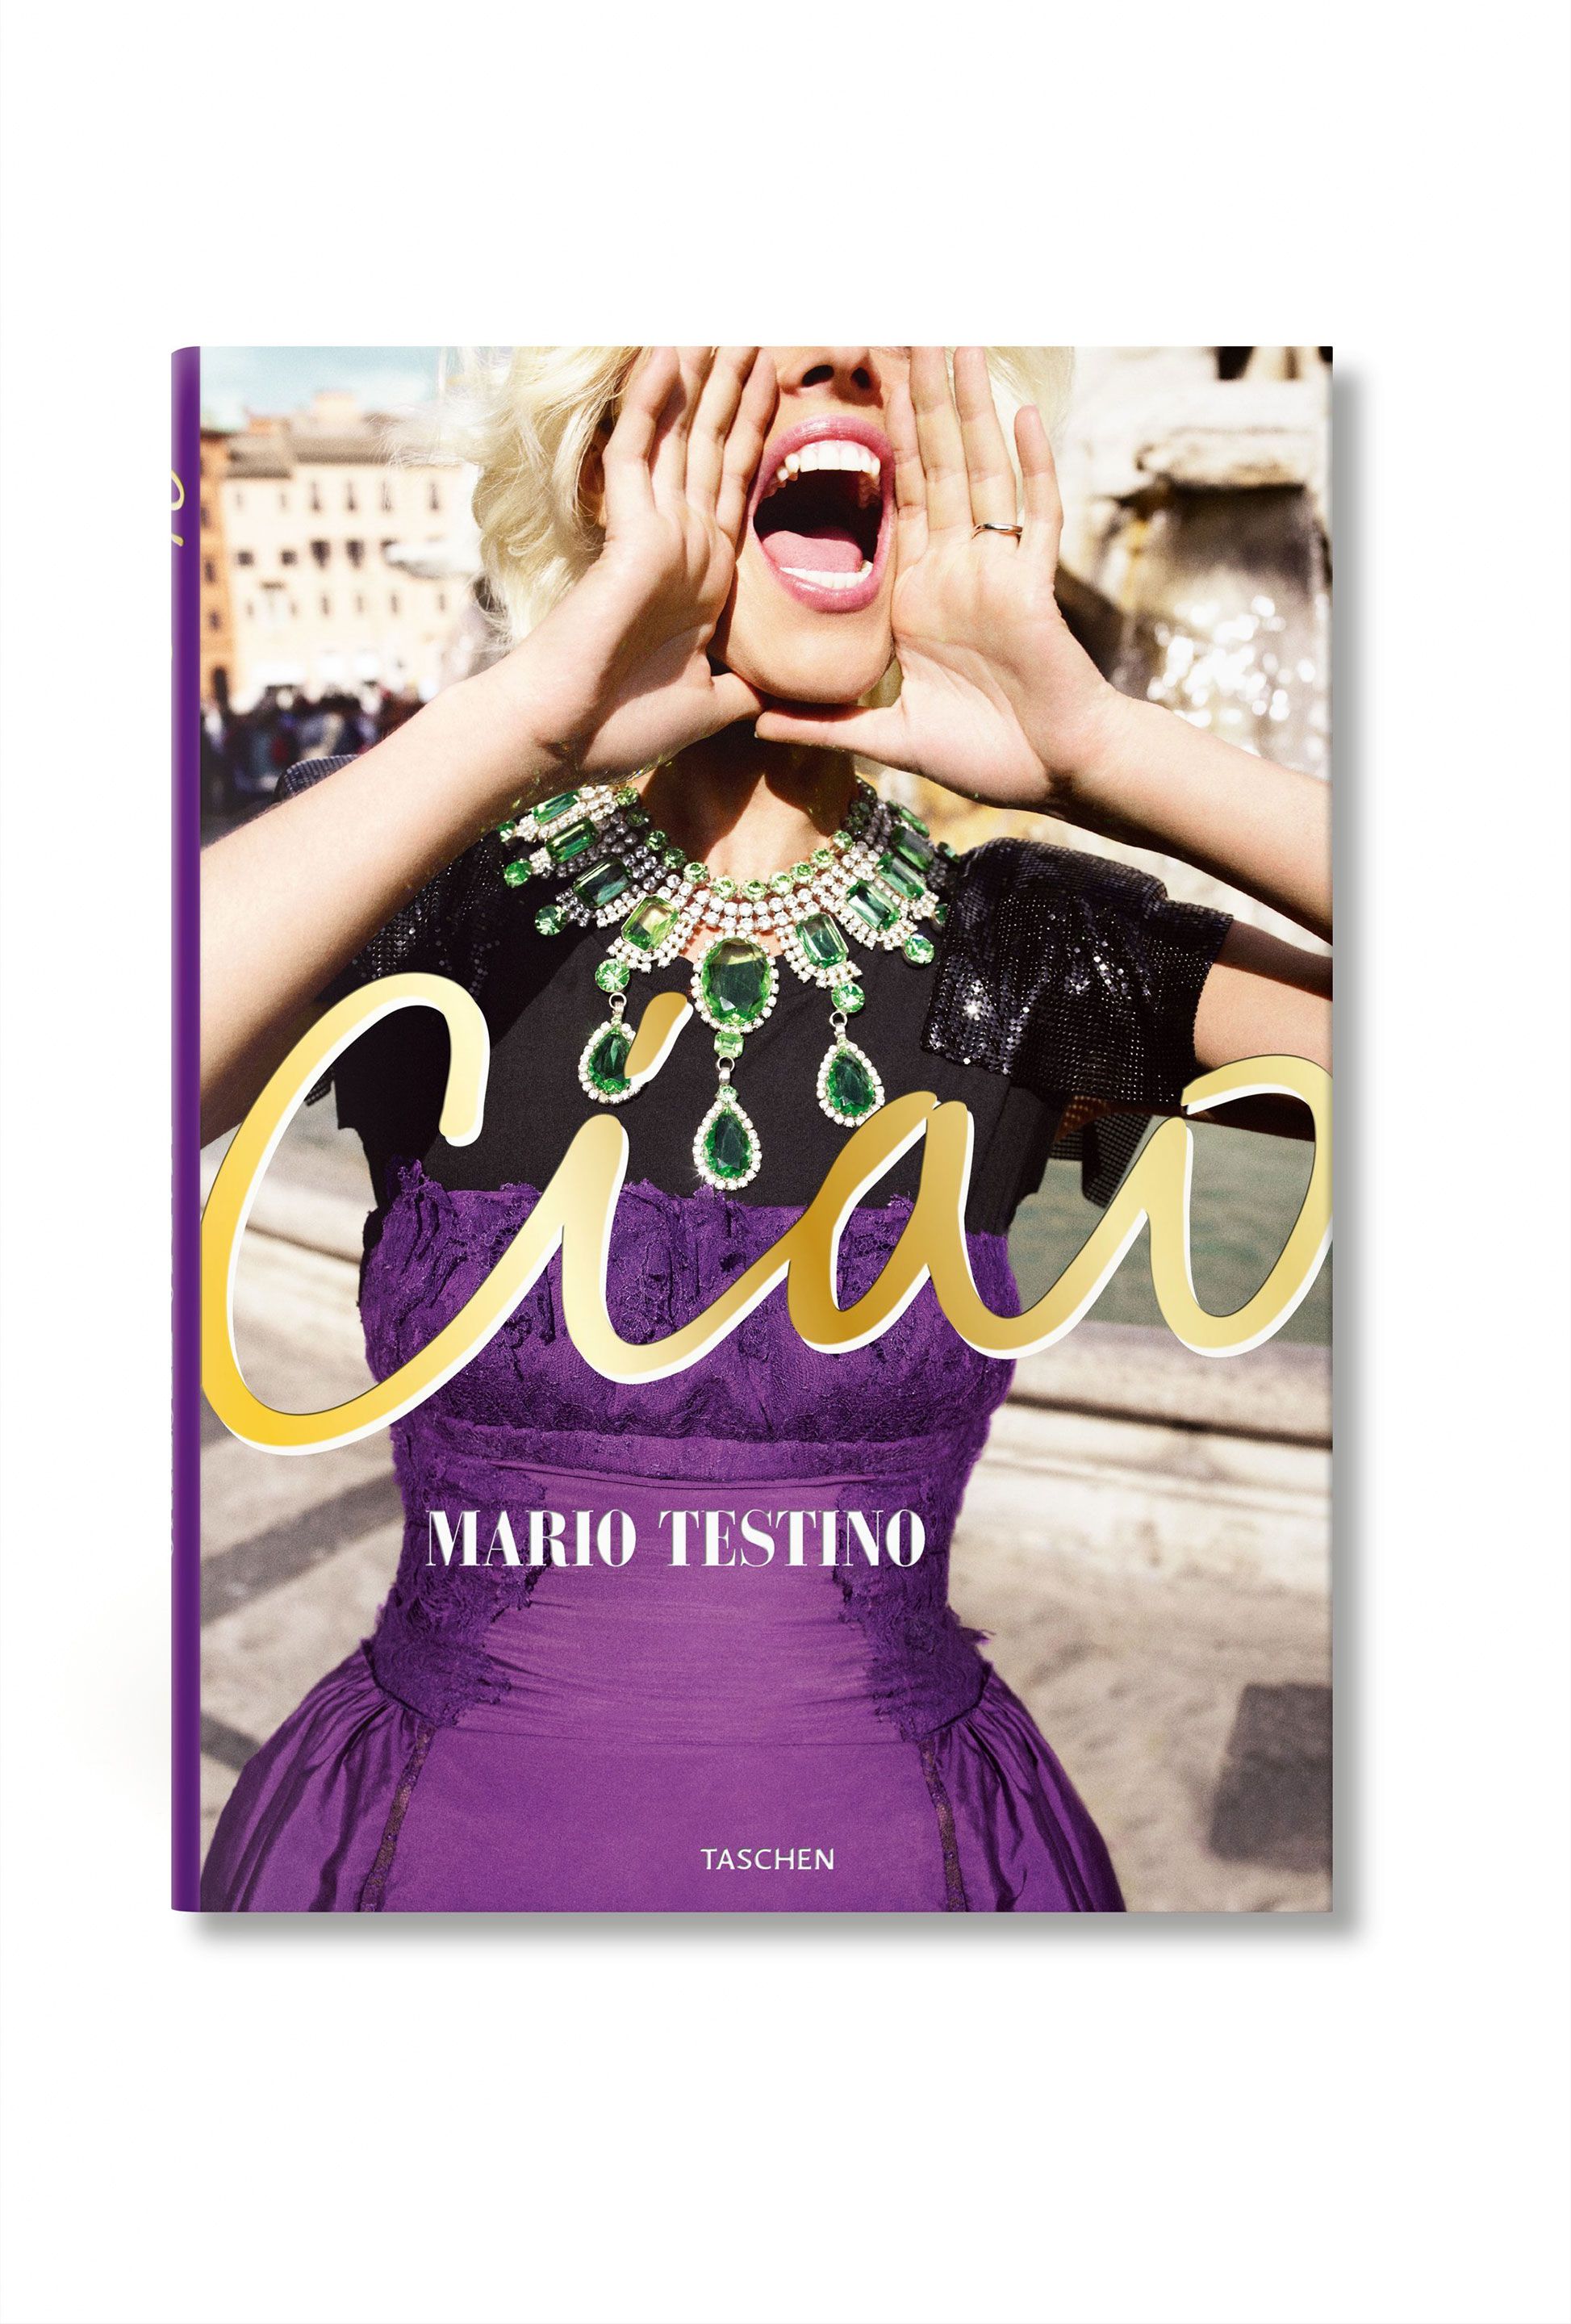 Cover book Ciao Taschen by Mario Testino